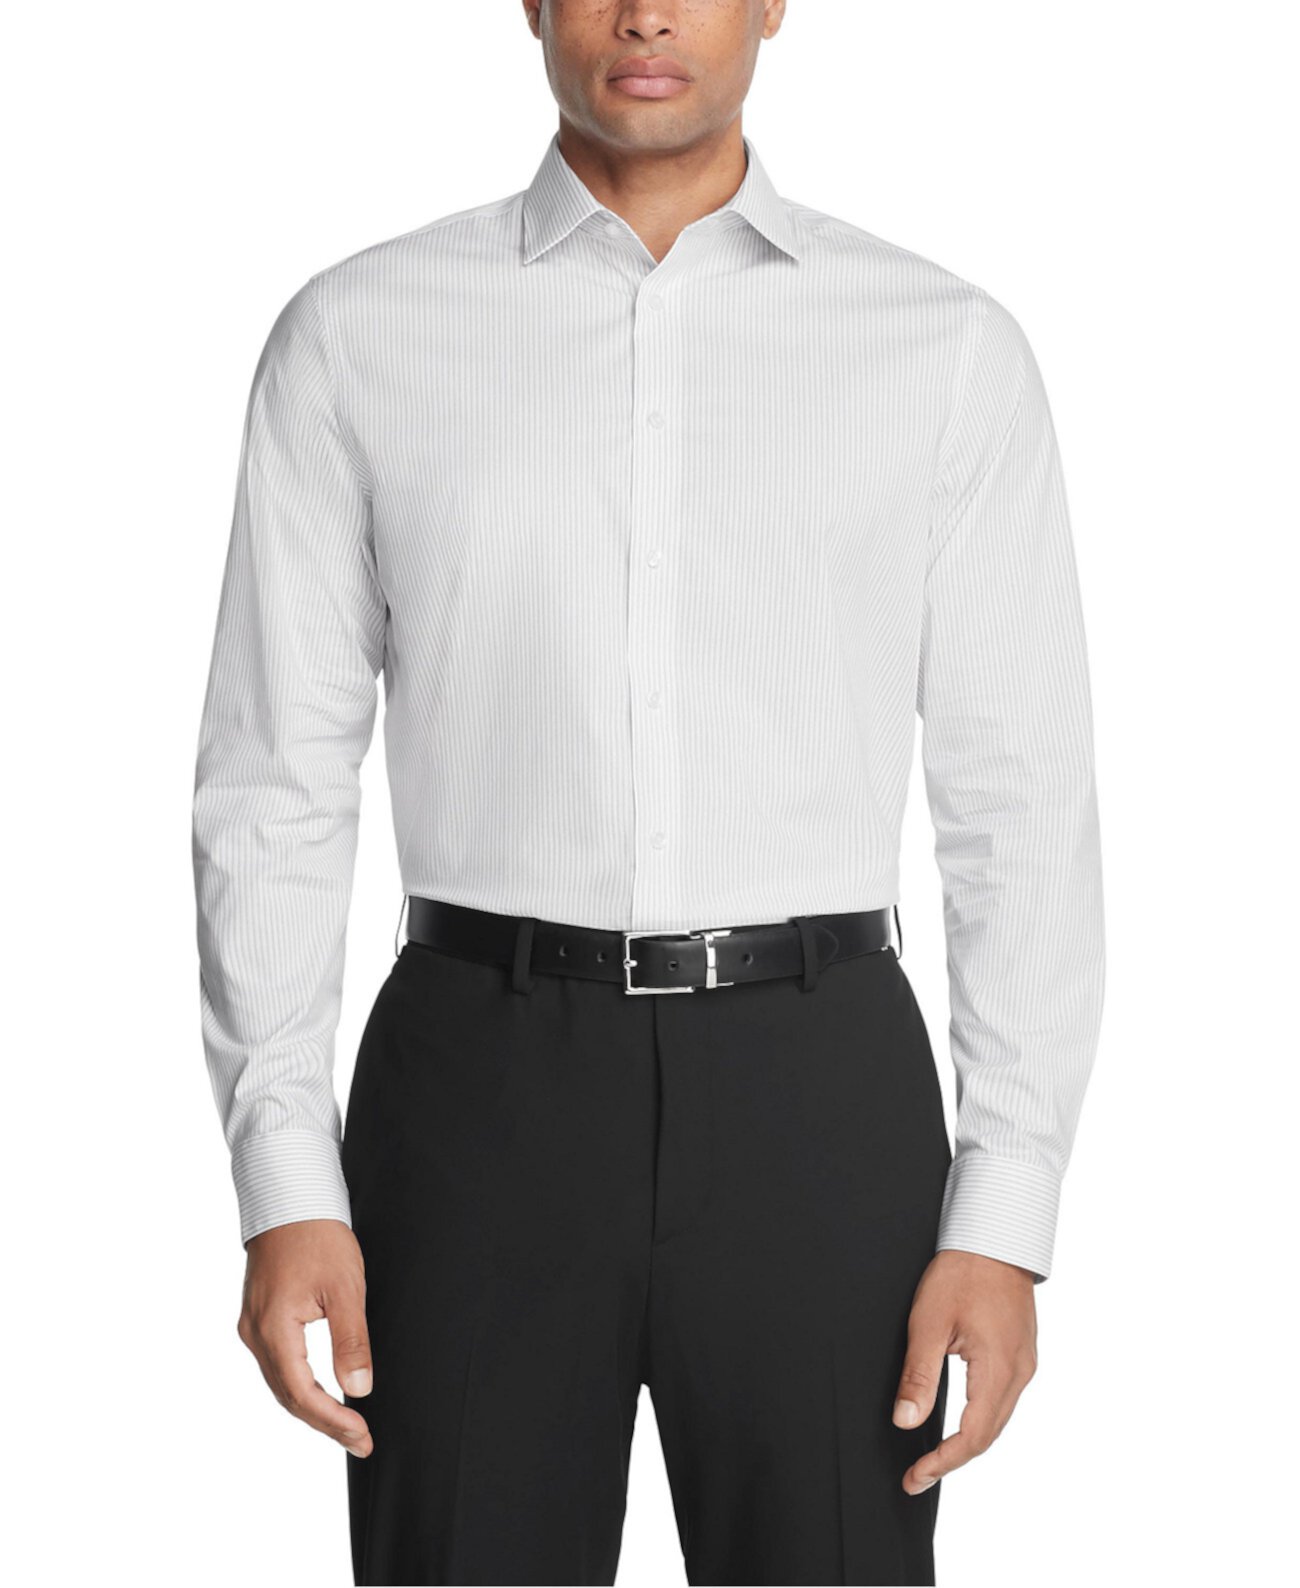 Мужская классическая рубашка Steel+ Slim Fit, устойчивая к морщинам Calvin Klein